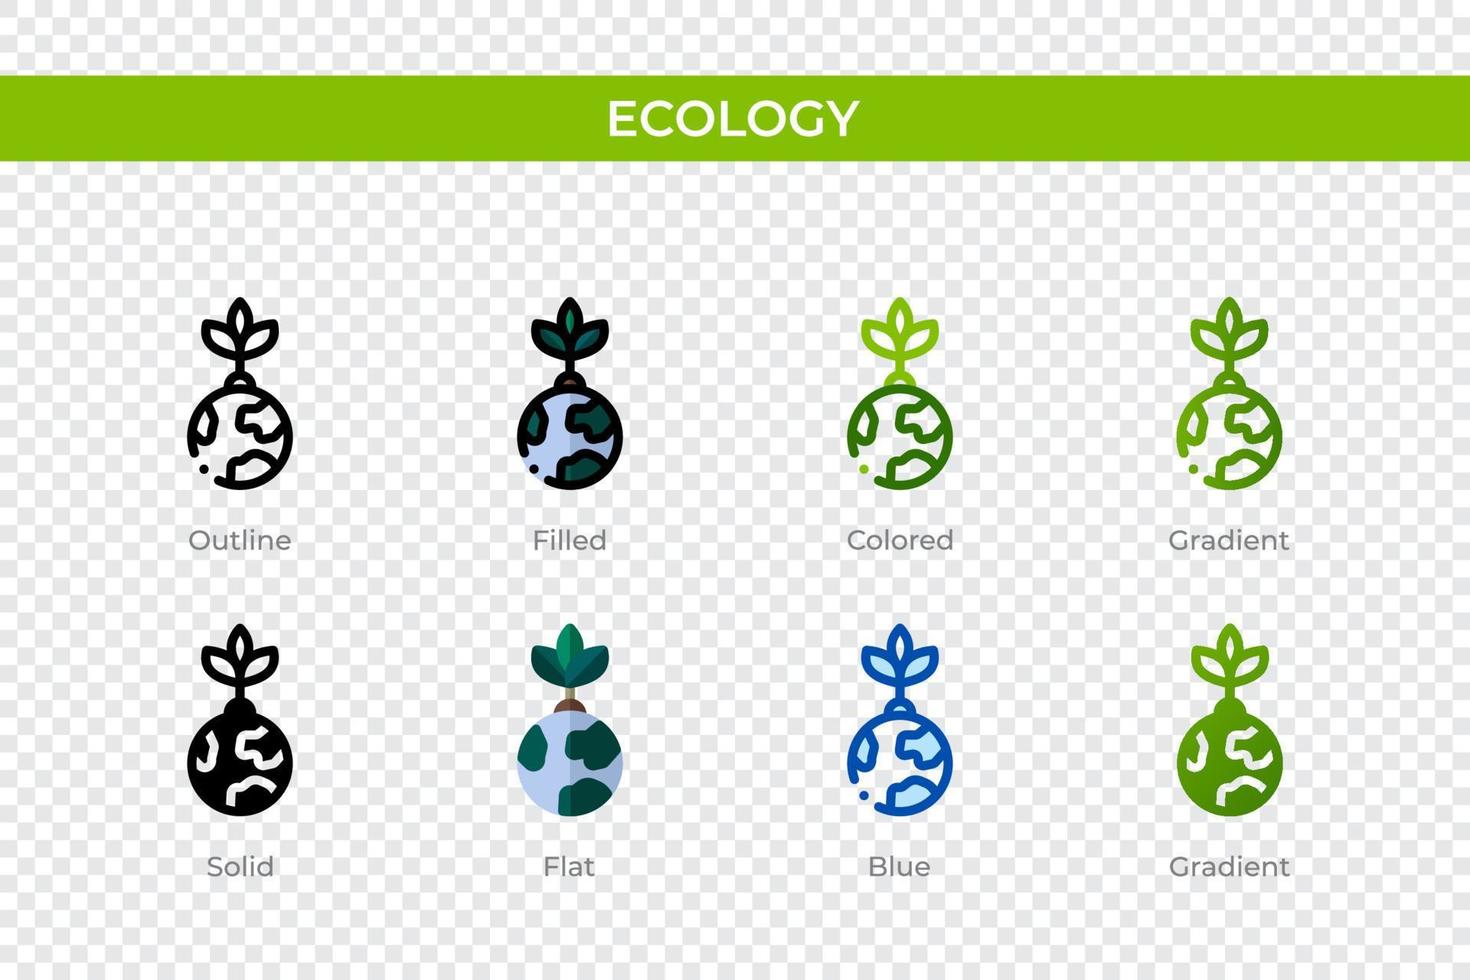 icono de la ecología en un estilo diferente. iconos vectoriales ecológicos diseñados en contorno, sólido, coloreado, relleno, degradado y estilo plano. símbolo, ilustración de logotipo. ilustración vectorial vector